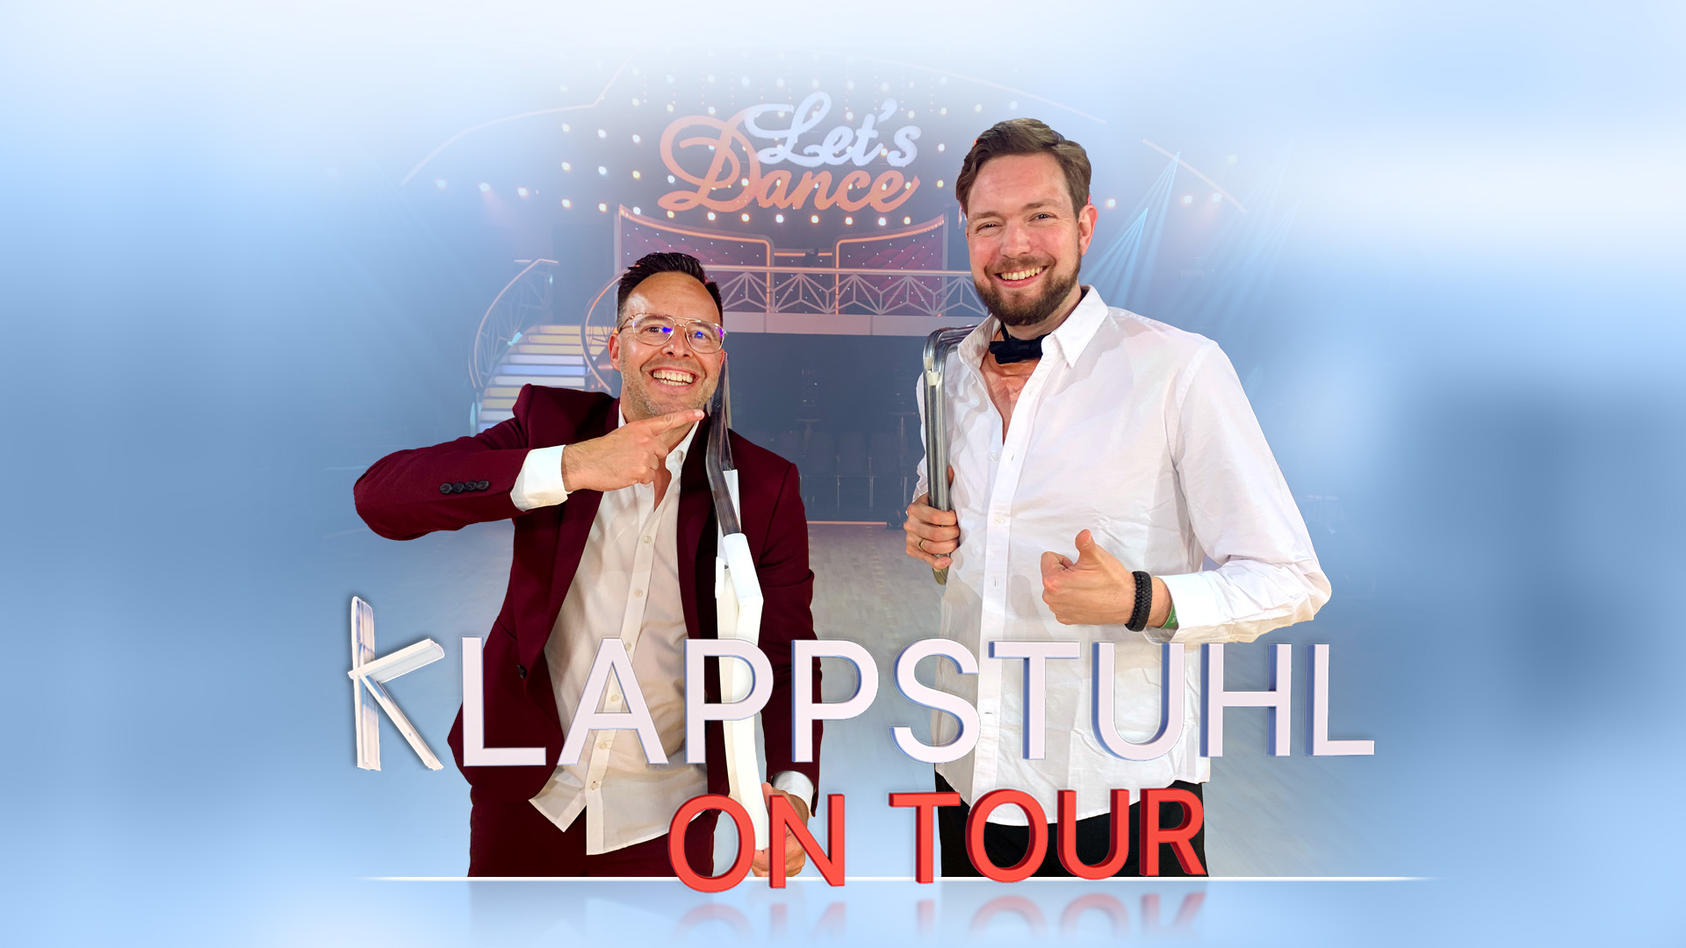 Till Quitmann trifft Comedian Bastian Bielendorfer Klappstuhl on Tour